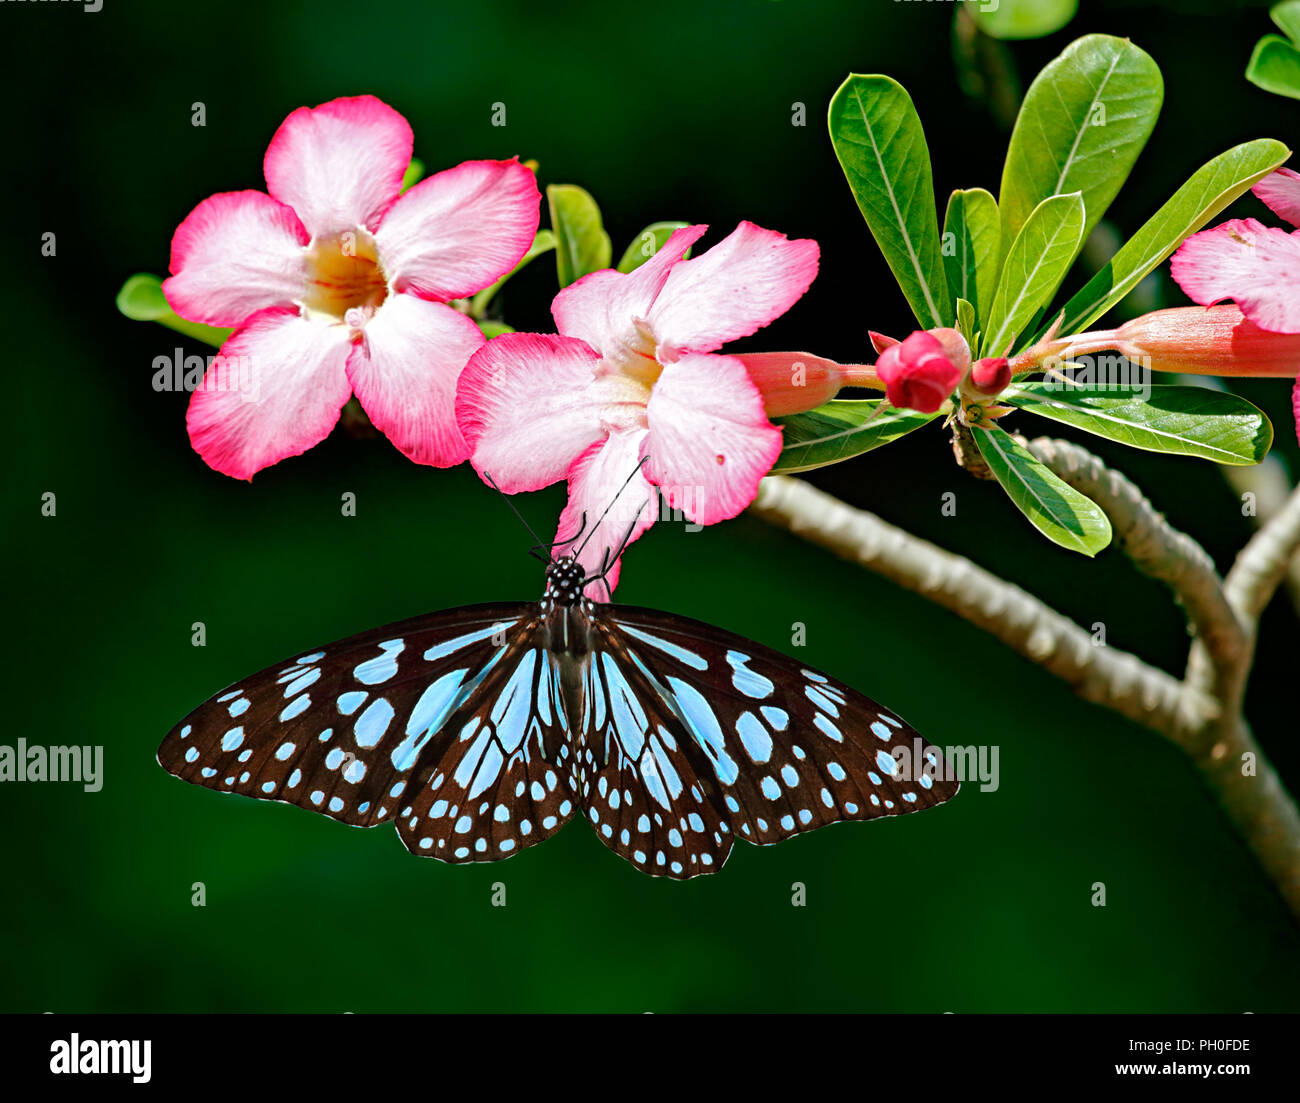 Tigre blu farfalla o Danaid Tirumala limniace su fiori di colore rosa di  Adenium Obesum o